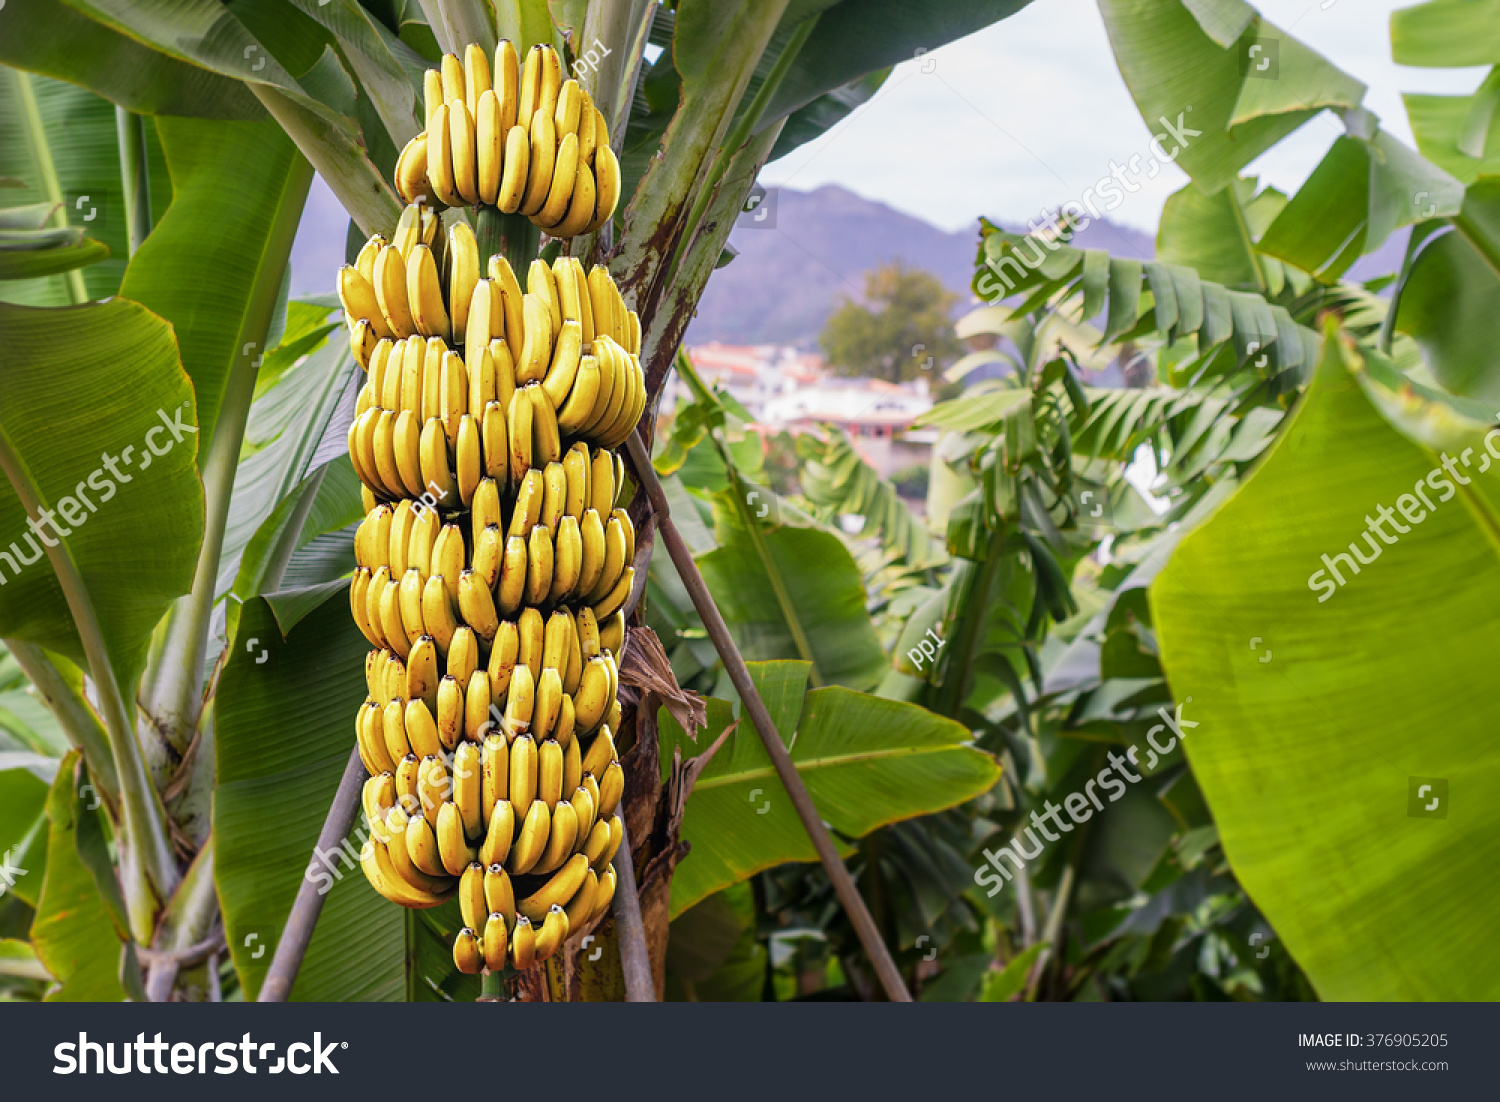 プランテーションの雨林の背景に成長する熟した黄色いバナナの束とバナナの木 の写真素材 今すぐ編集